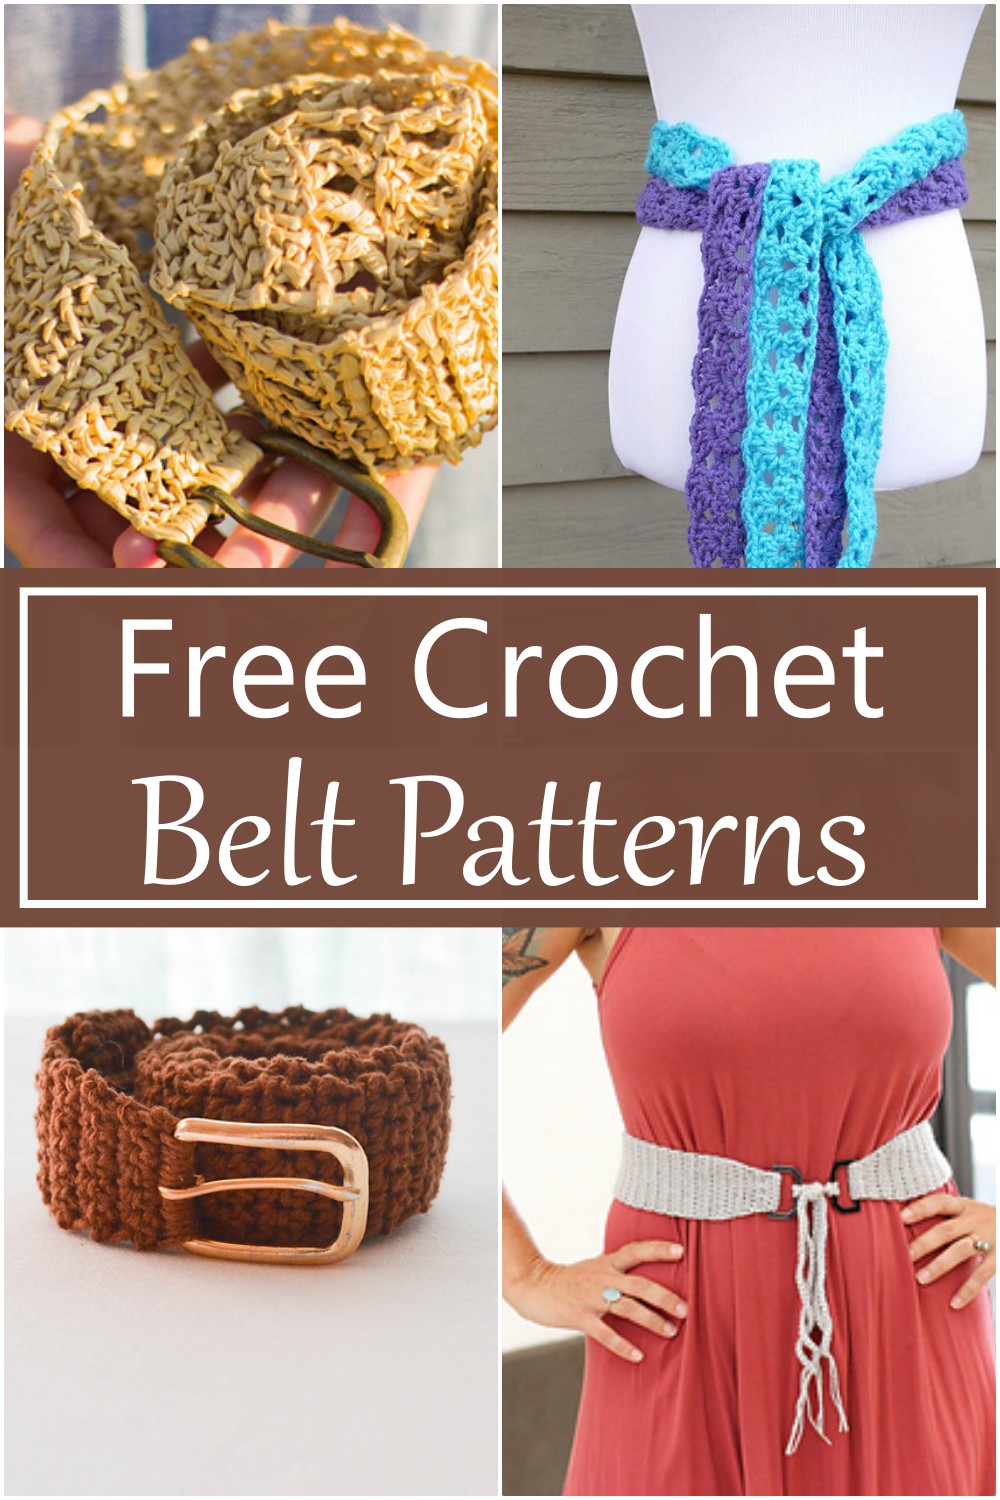 10 Free Crochet Belt Patterns